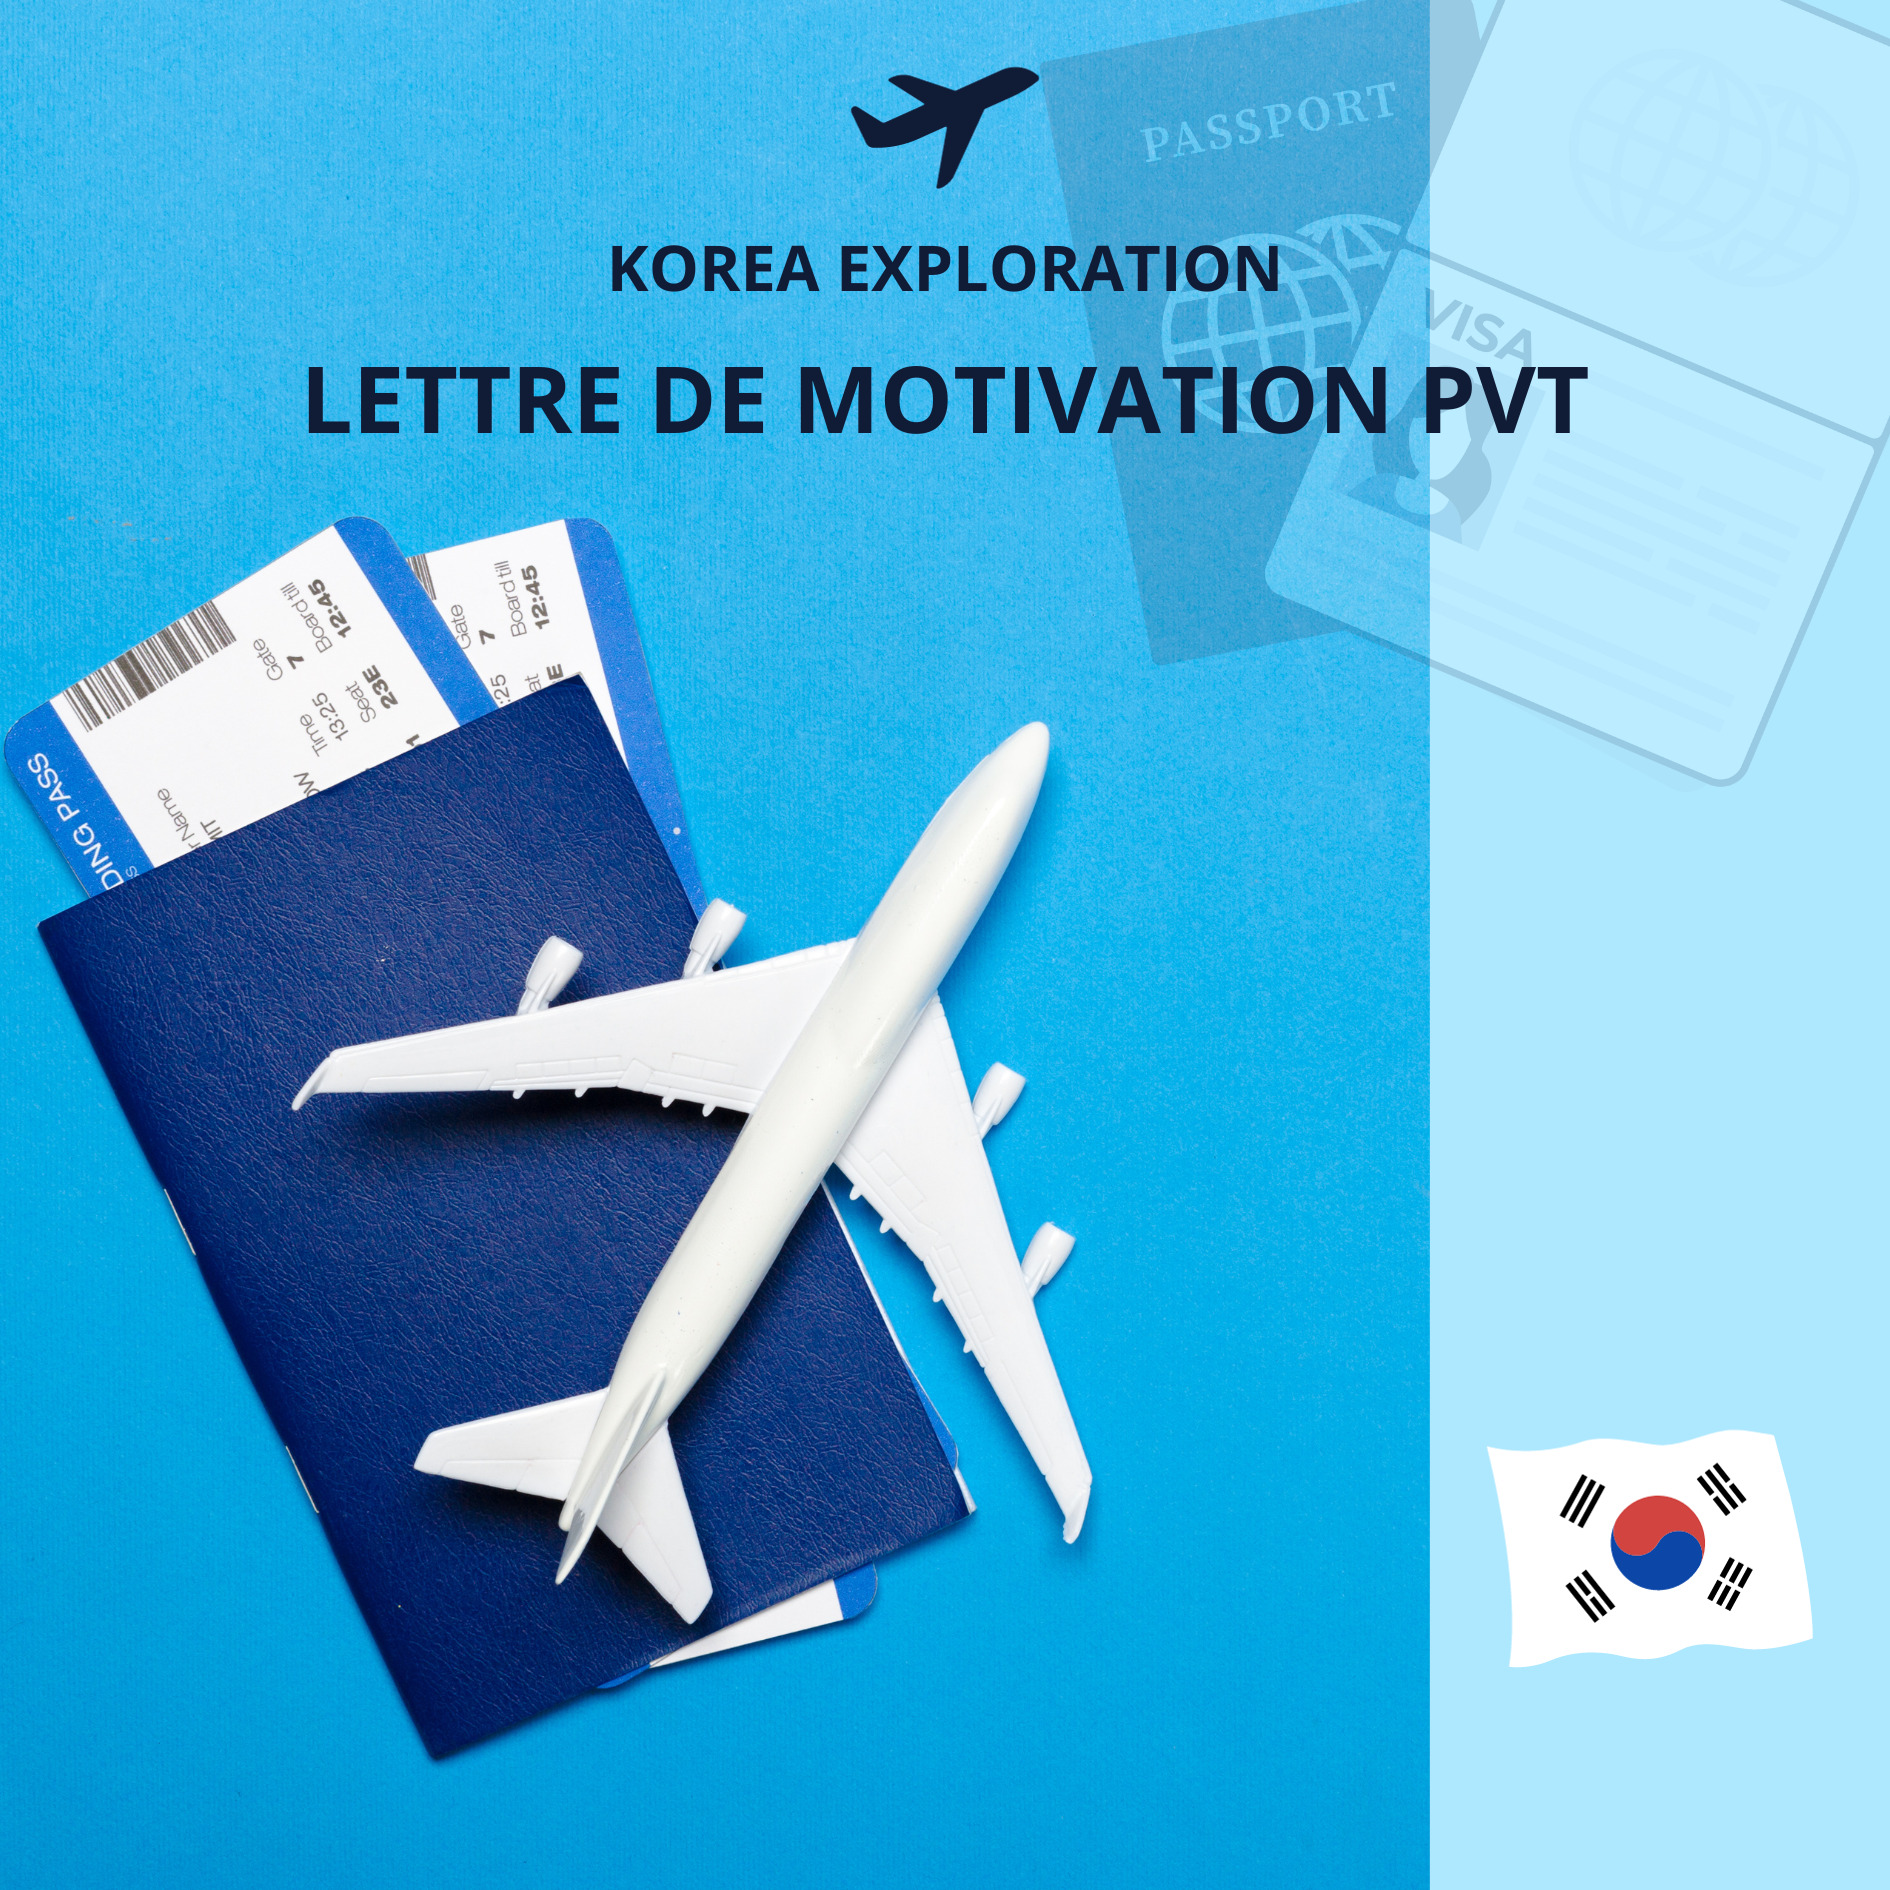 Carta de presentación PVT Corea del Sur: Ejemplo y Guía